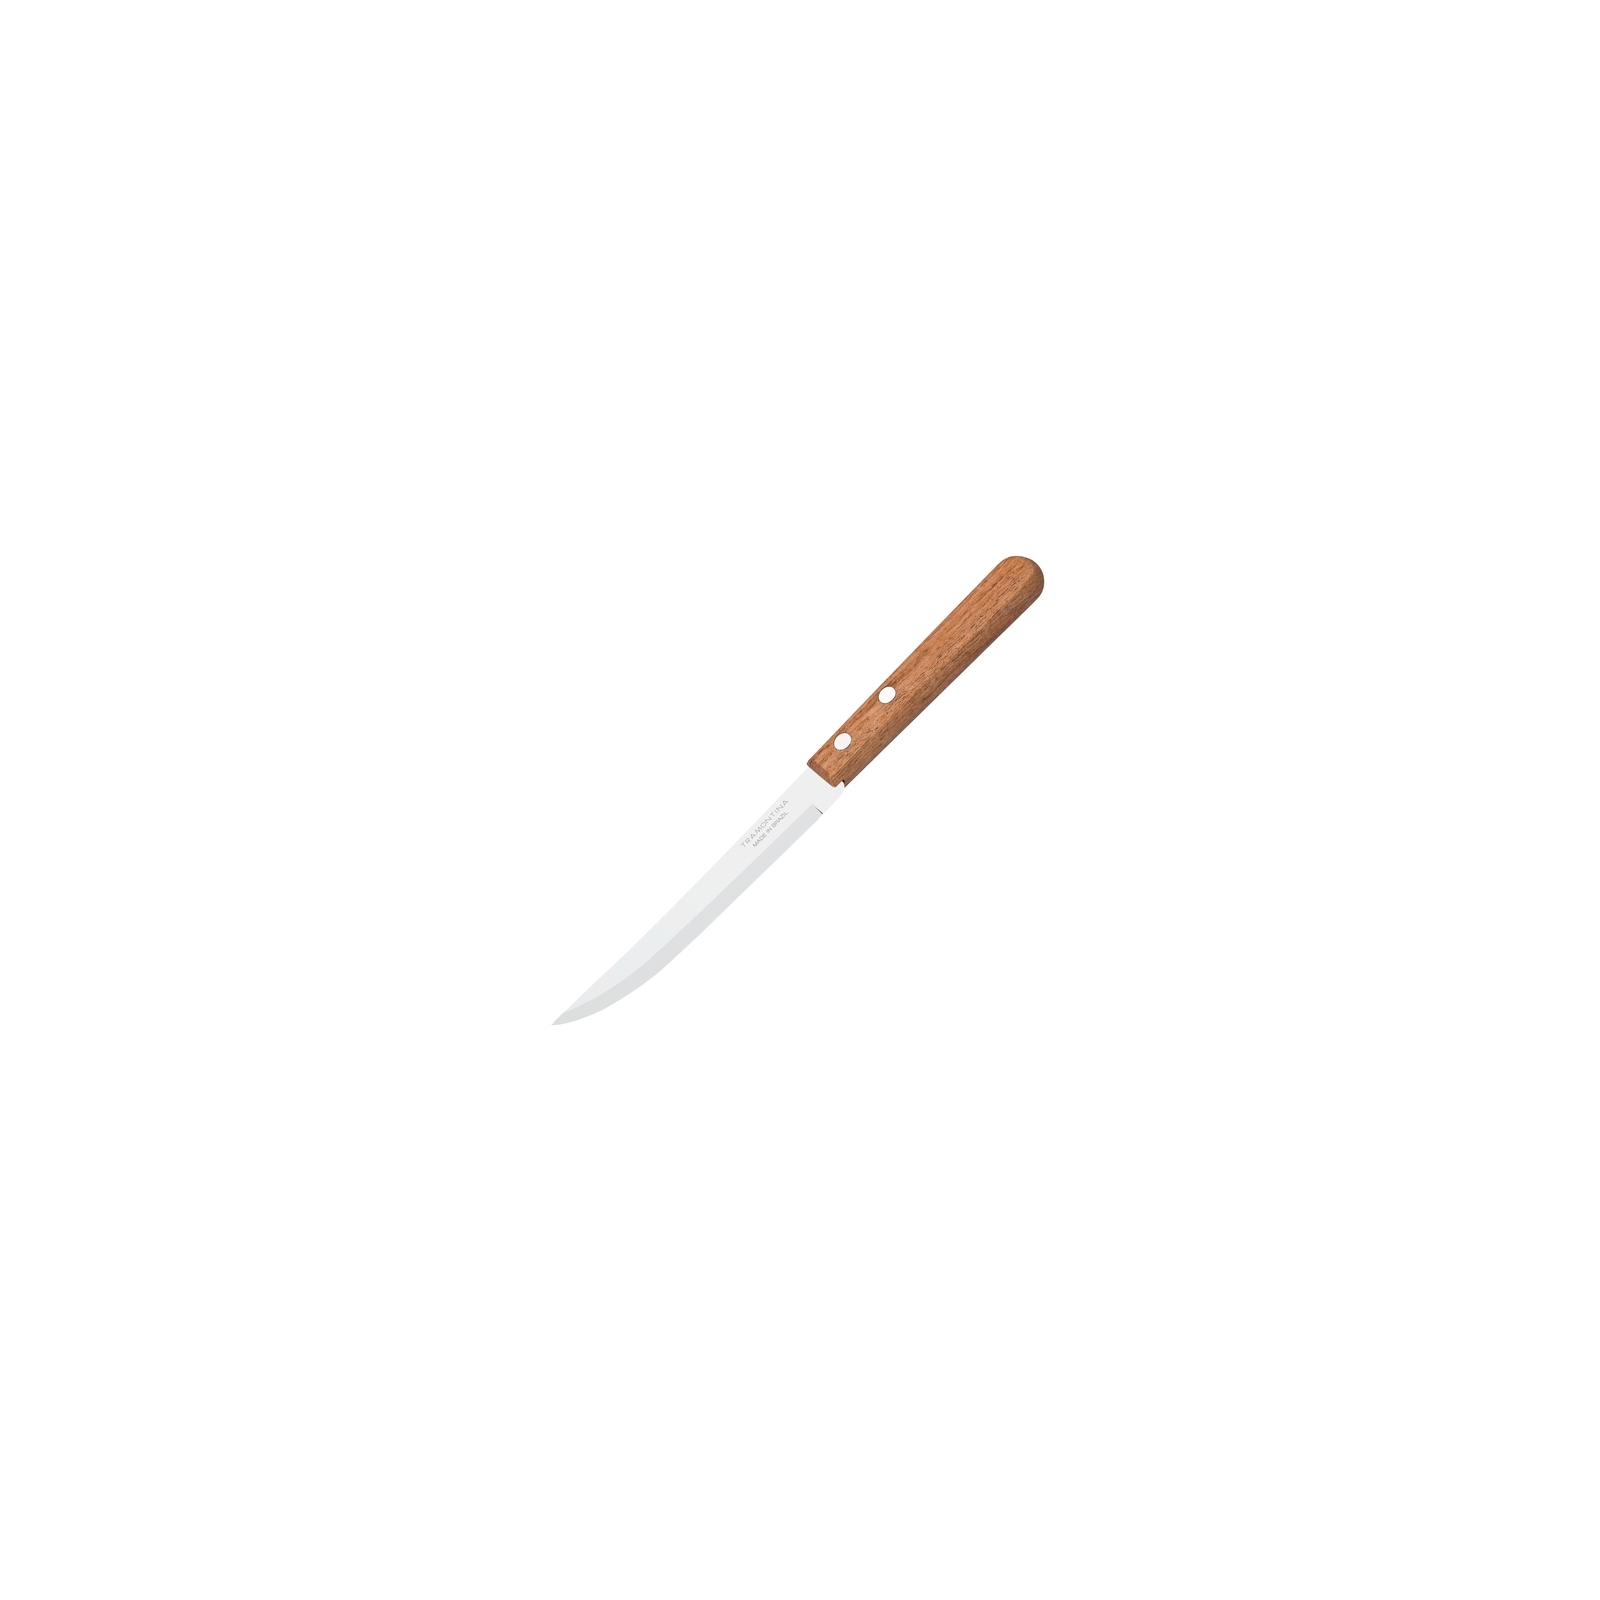 Кухонный нож Tramontina Dynamic для нарезки 127 мм (22321/705)